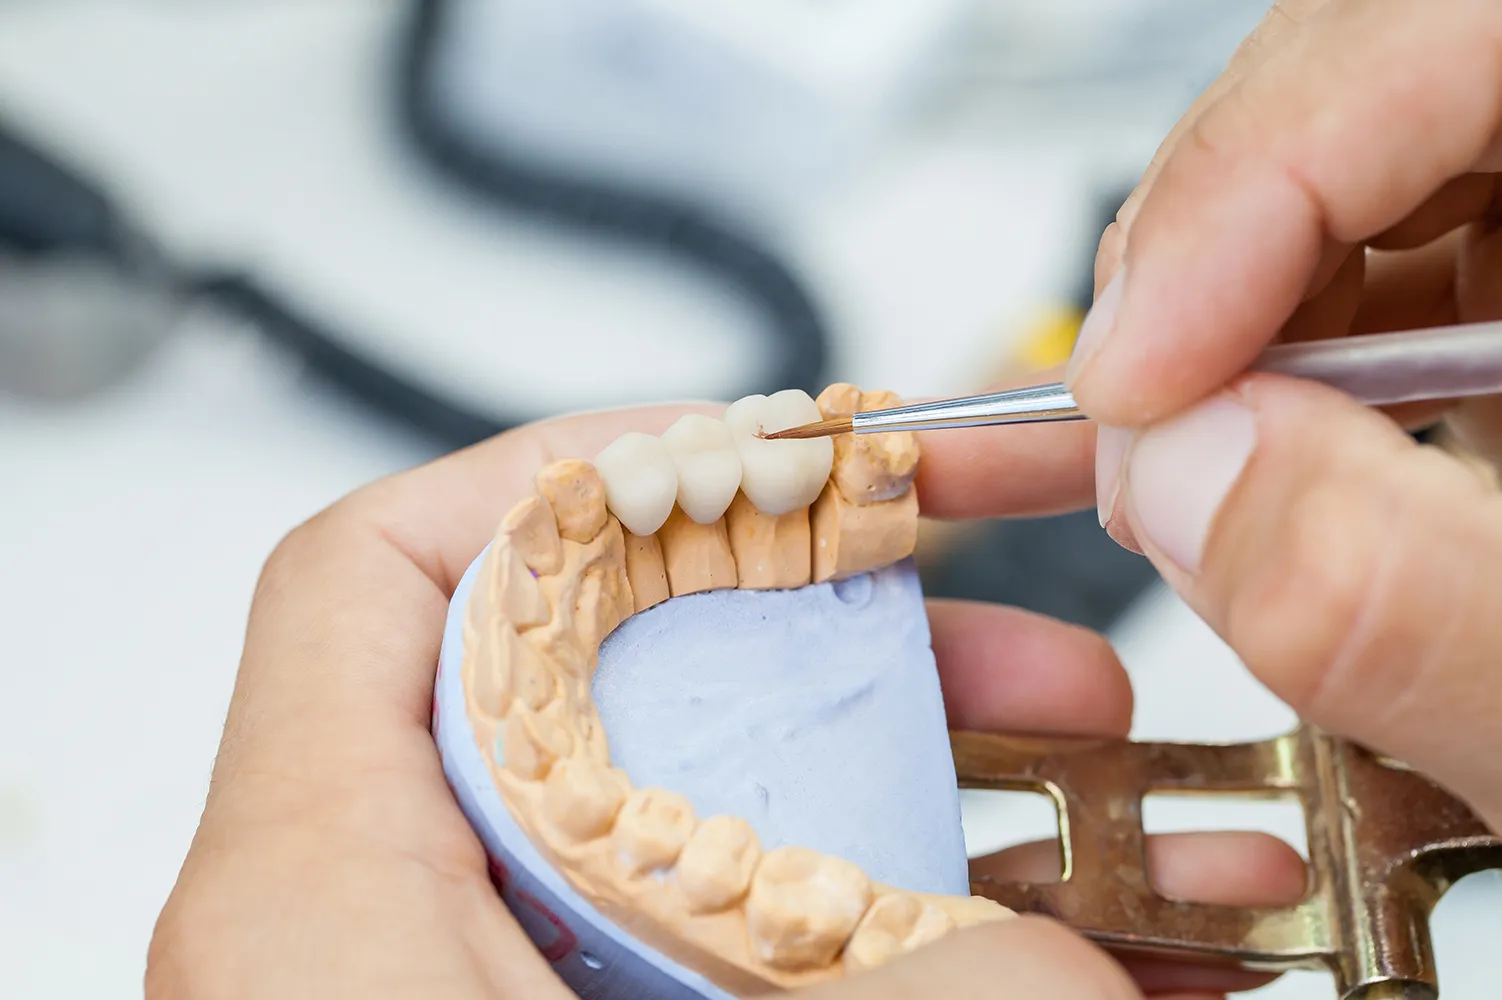 Zahnarztpraxis  Daniel Schulze  Zahntechniker arbeitet mit Pinsel und Kiefermodell